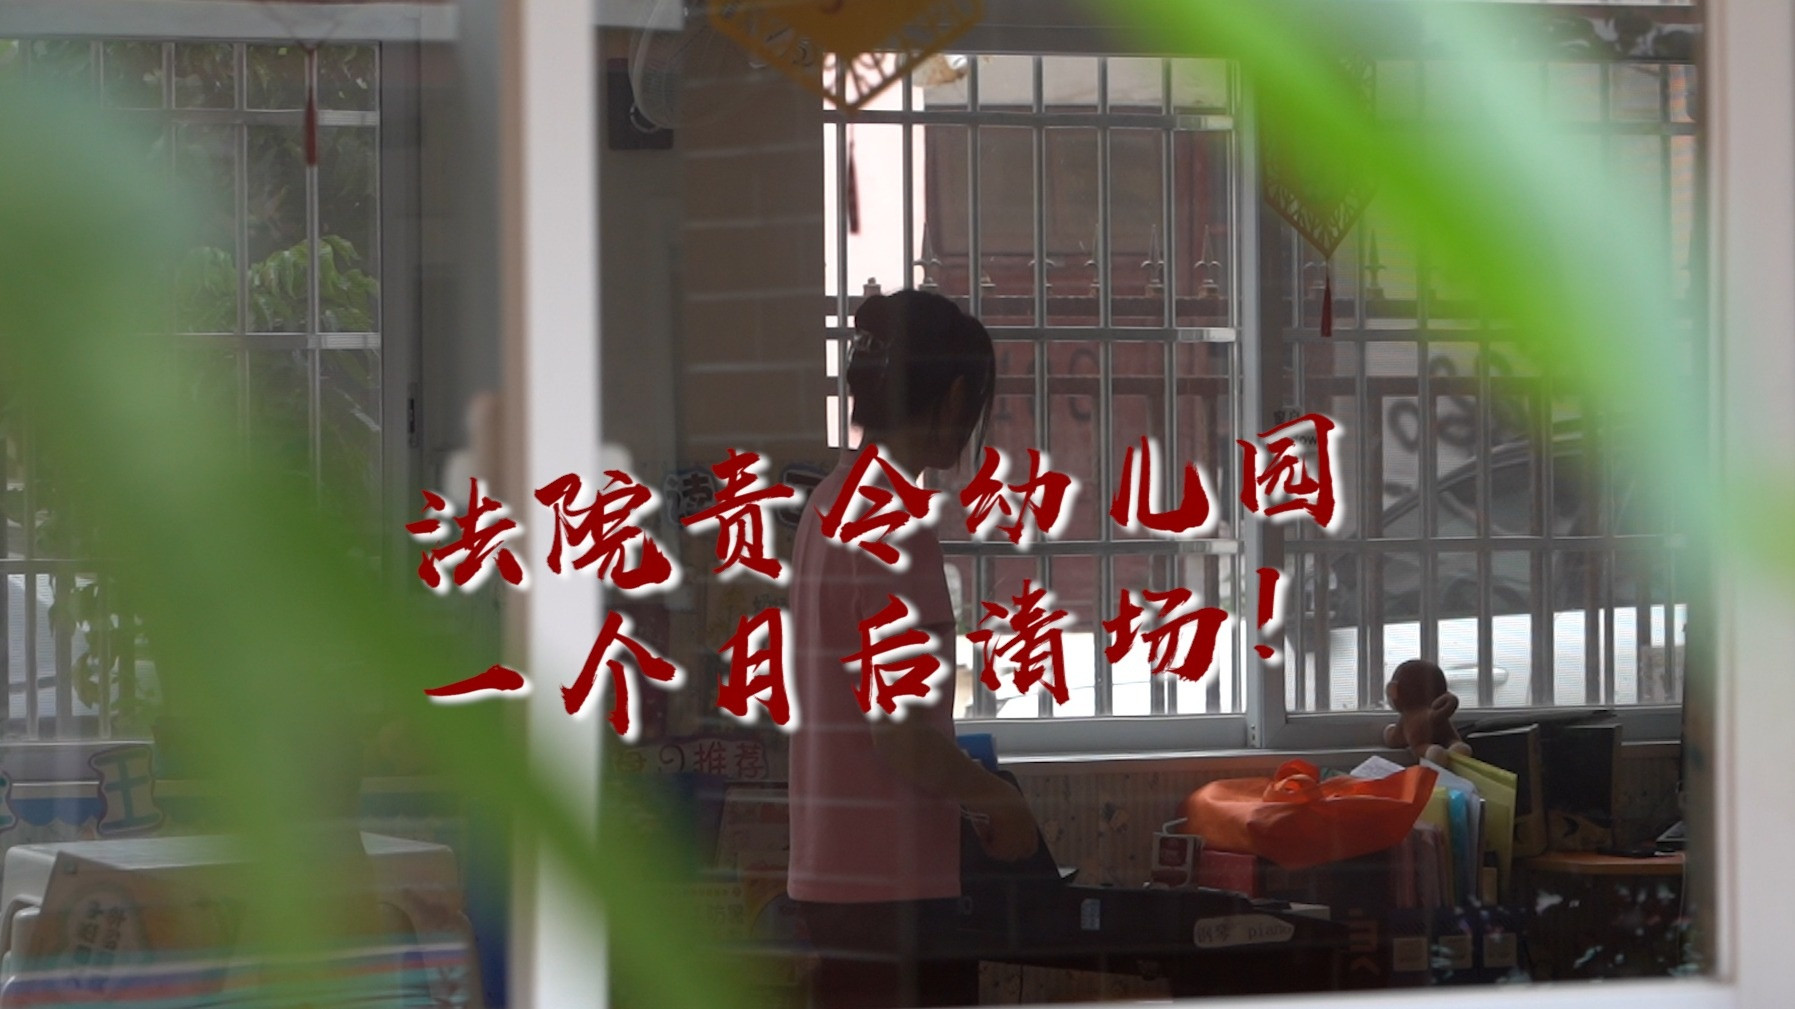 广州一幼儿园被责令一个月后清场, 300多名师生何去何从?